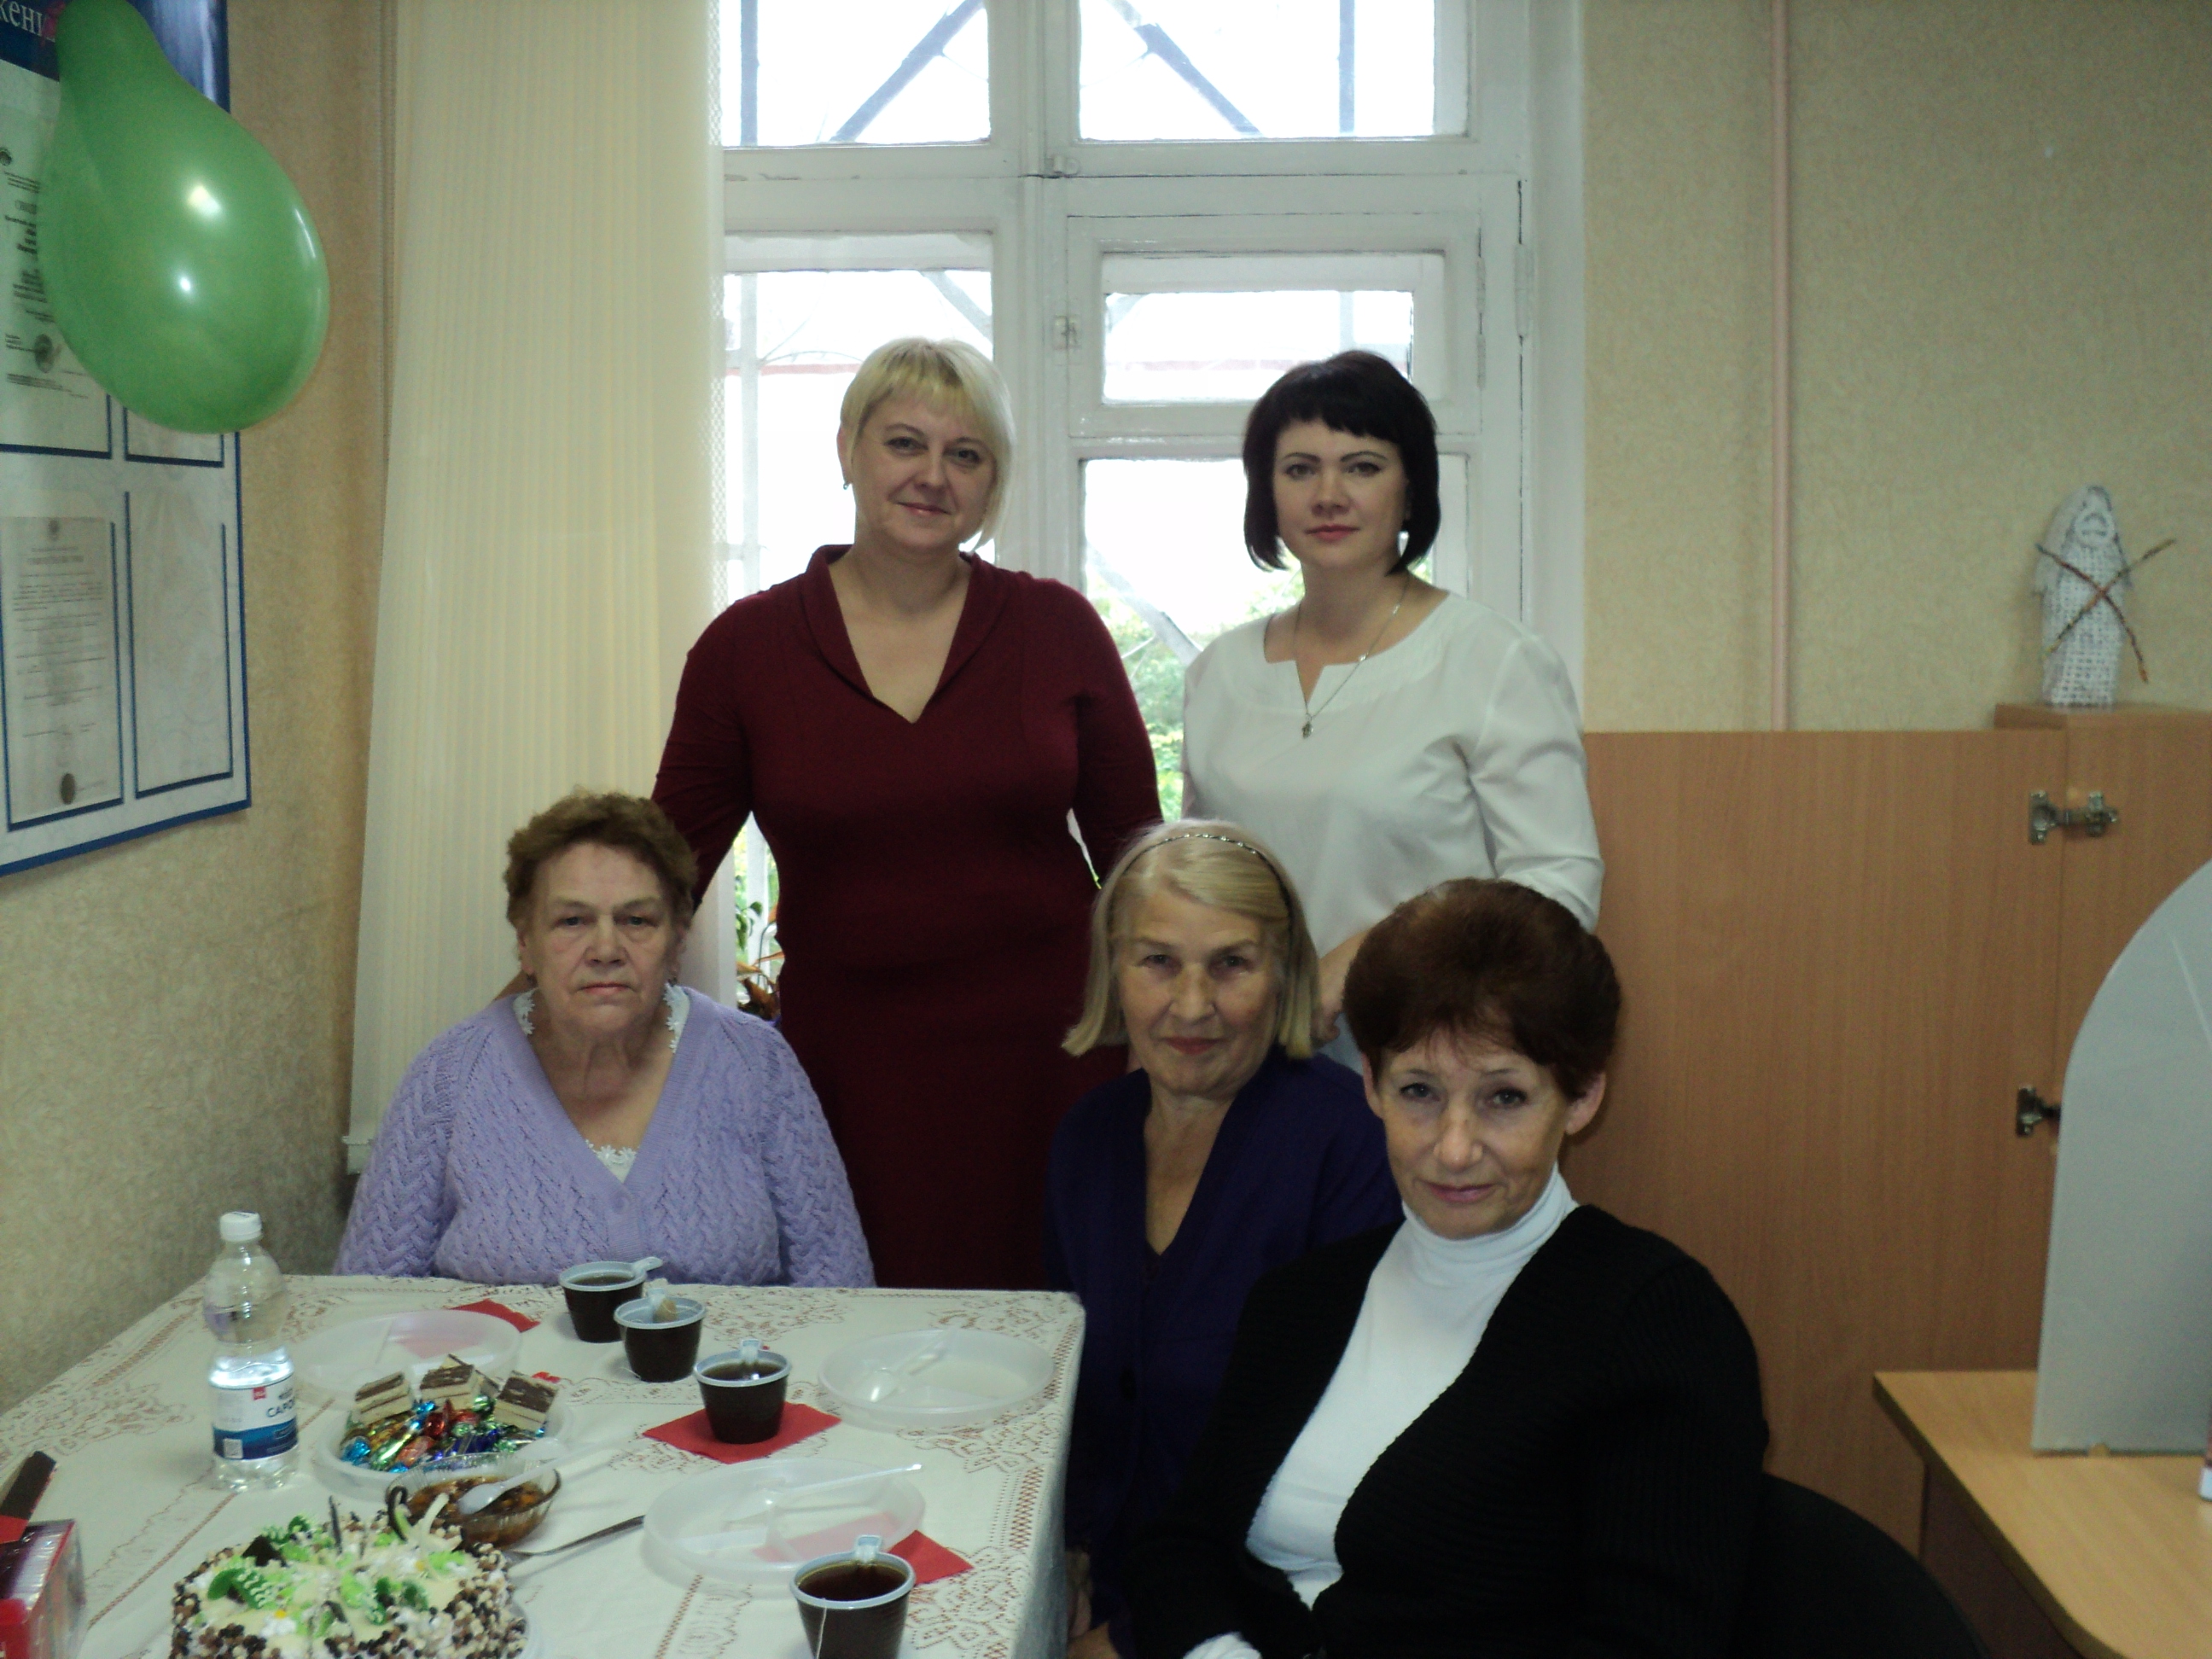 Встреча на декаду пожилого человека в офиса Нижегородского кредитного союза